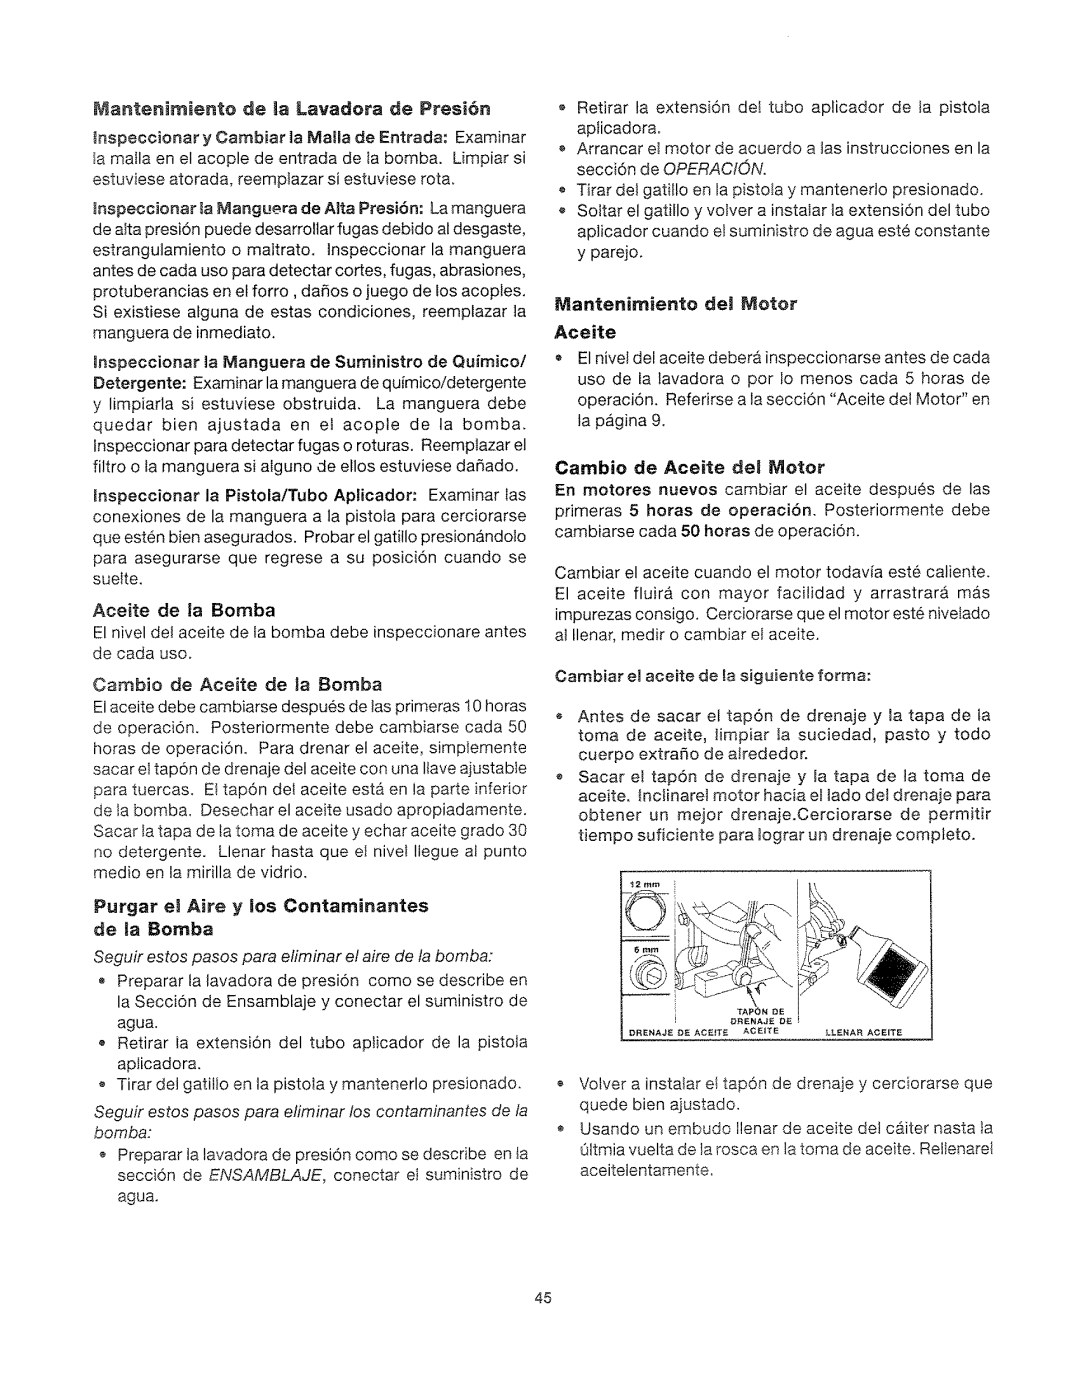 Craftsman 919.762500 manual Purgar et Aire y tos Contarninantes de la Bomba, Mantenirniente del Motor Aceite 